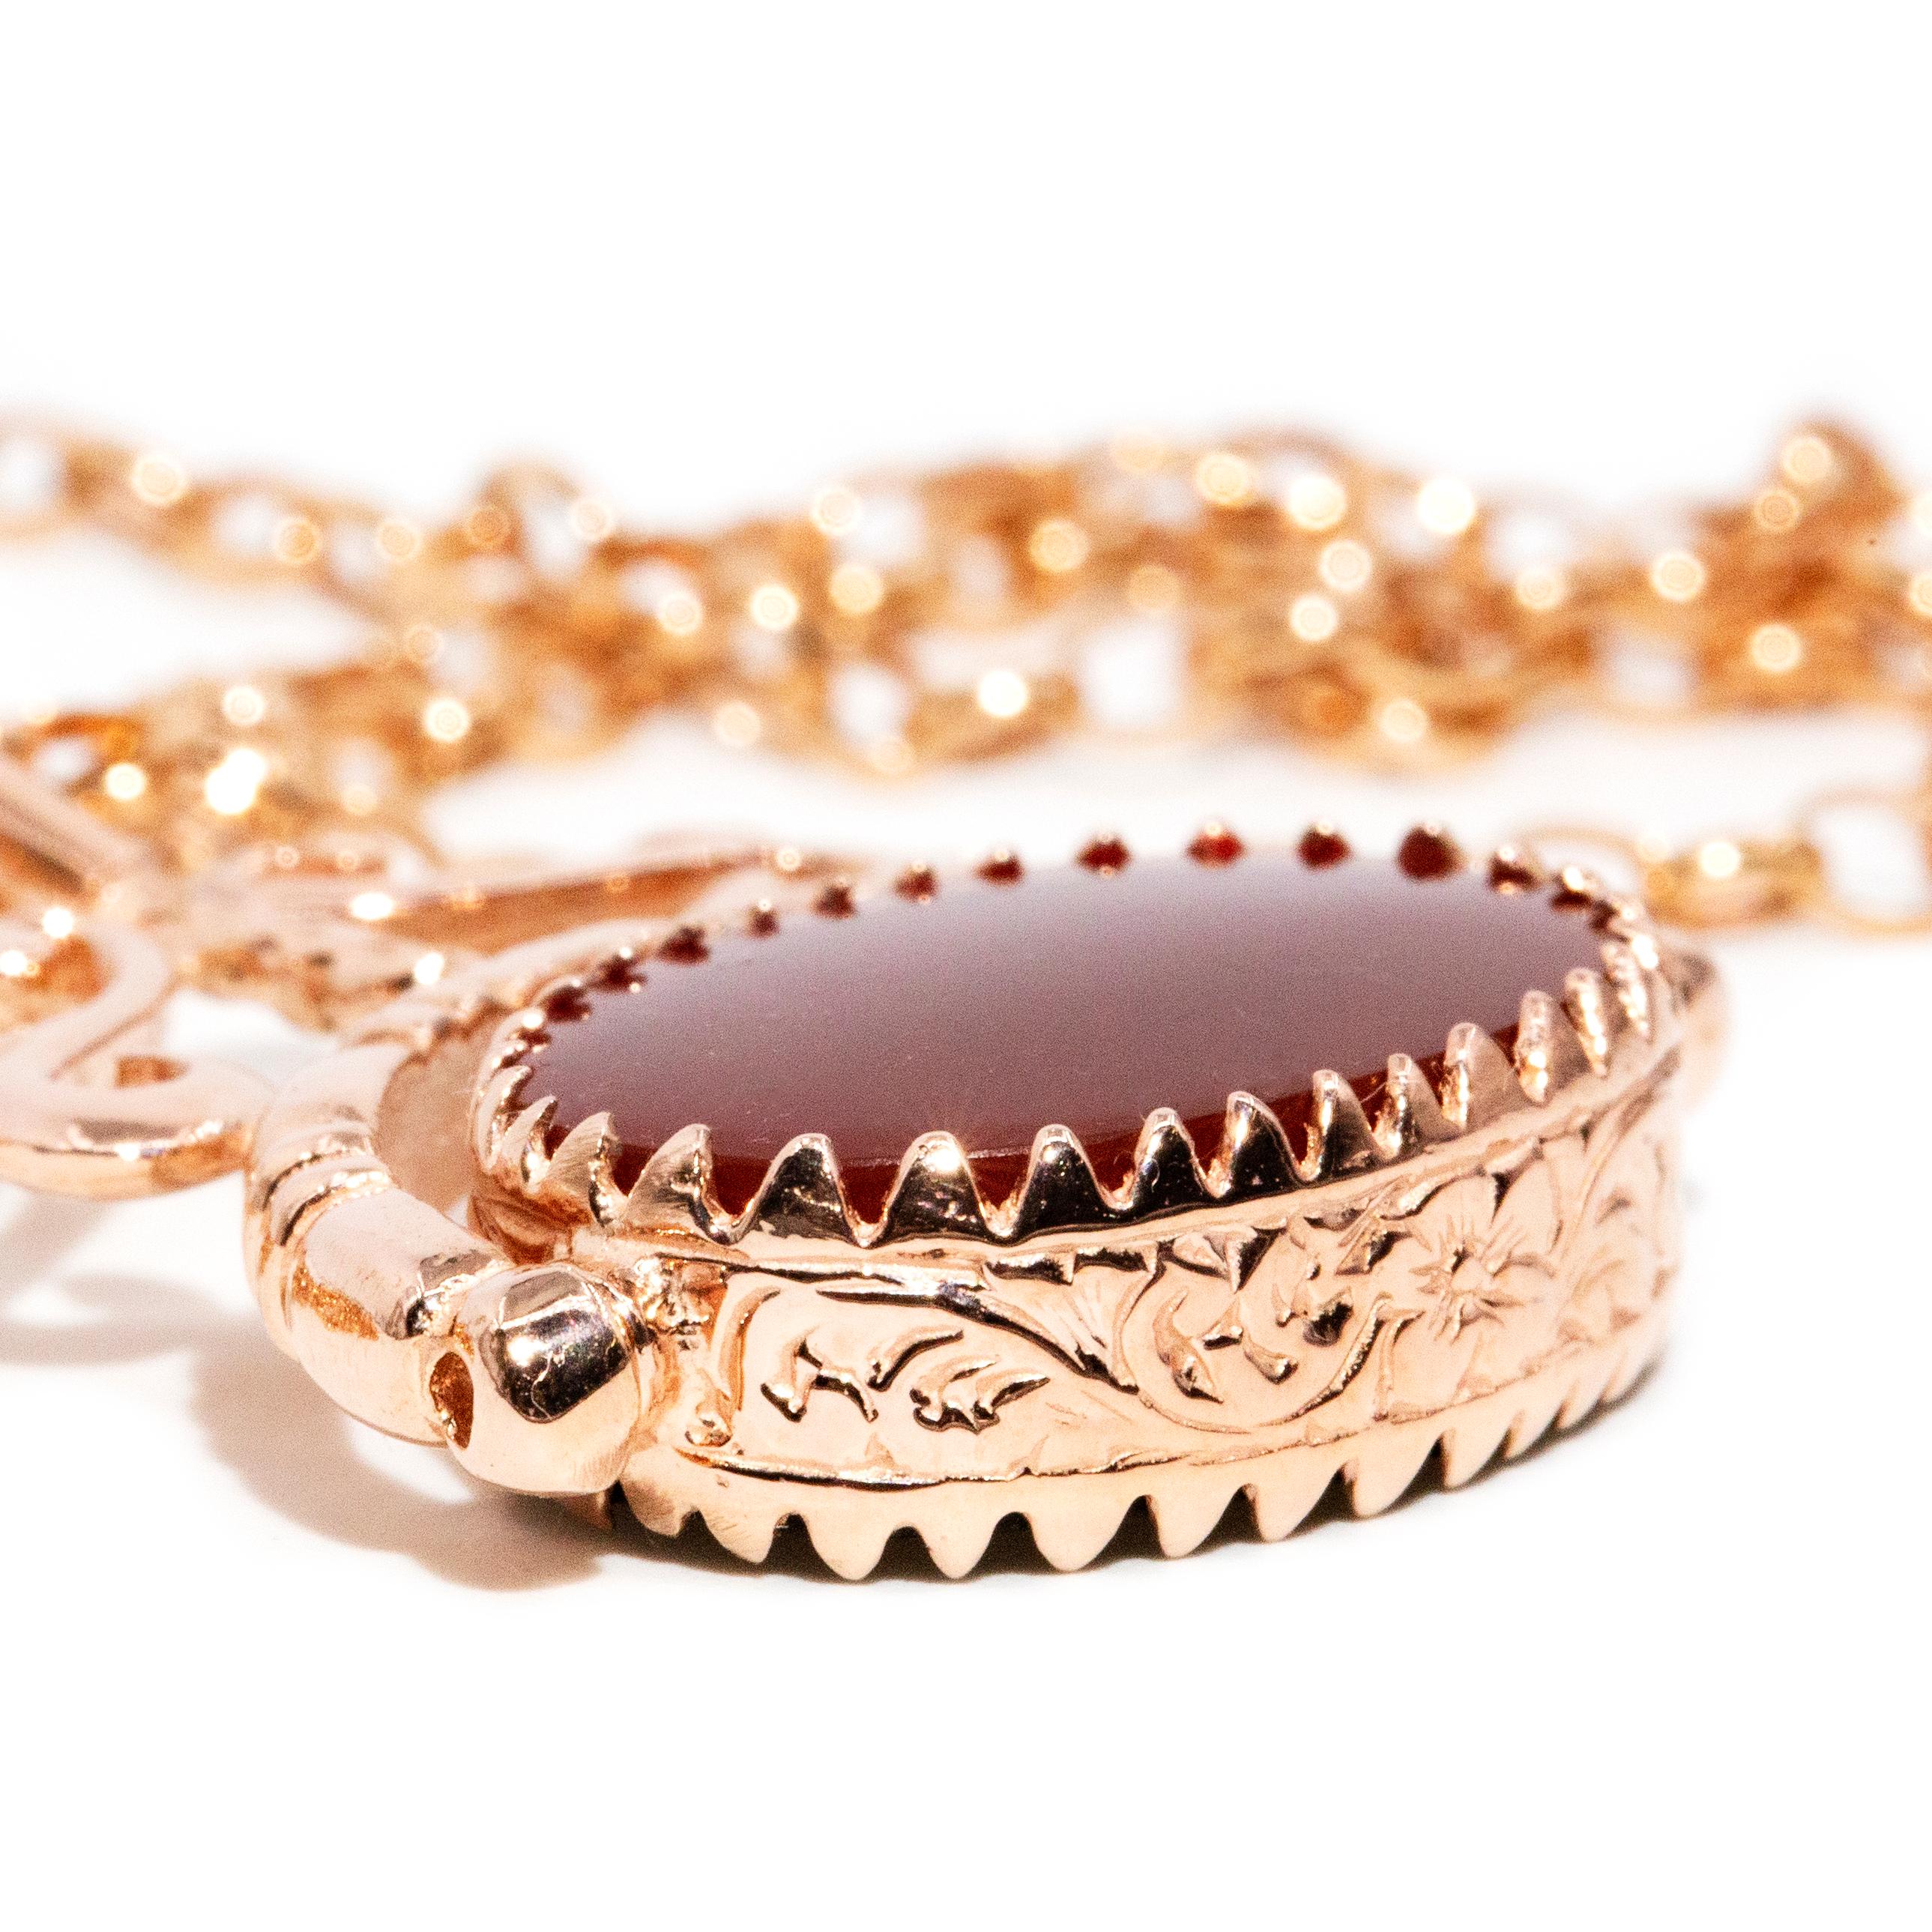 Le pendentif et la chaîne Callis est une magnifique parure vintage qui s'enroule autour d'un anneau de cornaline et d'onyx cramoisis. Ses pierres précieuses sont entourées de magnifiques guirlandes de fleurs sculptées dans de l'or rose 9 carats.

Le